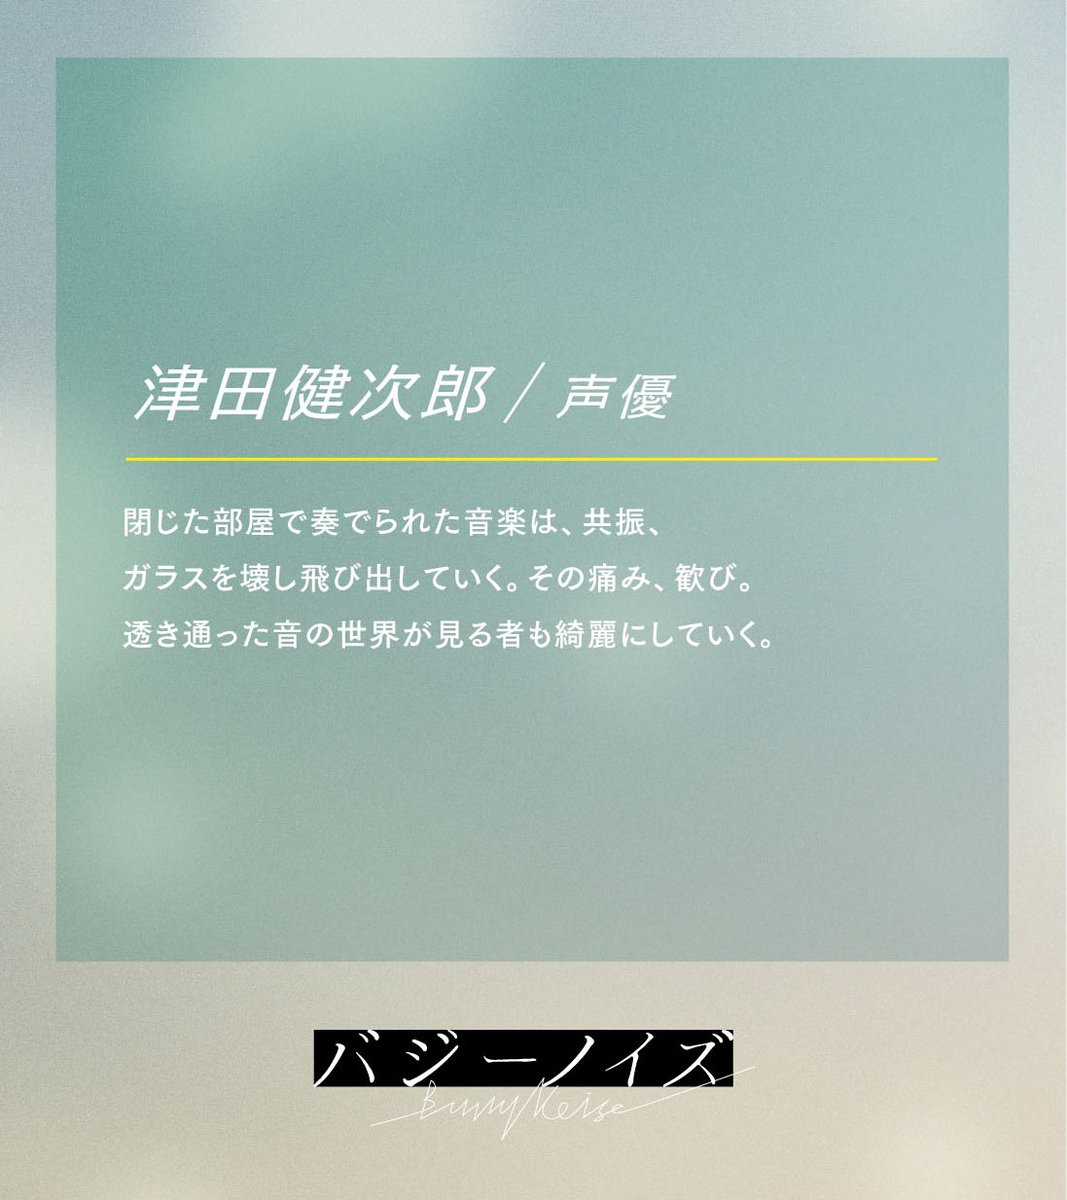 𓏸𓈒 𝘊𝘰𝘮𝘮𝘦𝘯𝘵  
￣￣￣￣￣￣￣

#津田健次郎  / 声優
gaga.ne.jp/buzzynoise_mov…
──────────
#バジーノイズ
𝘕𝘰𝘸 𝘚𝘩𝘰𝘸𝘪𝘯𝘨 ı||ıı